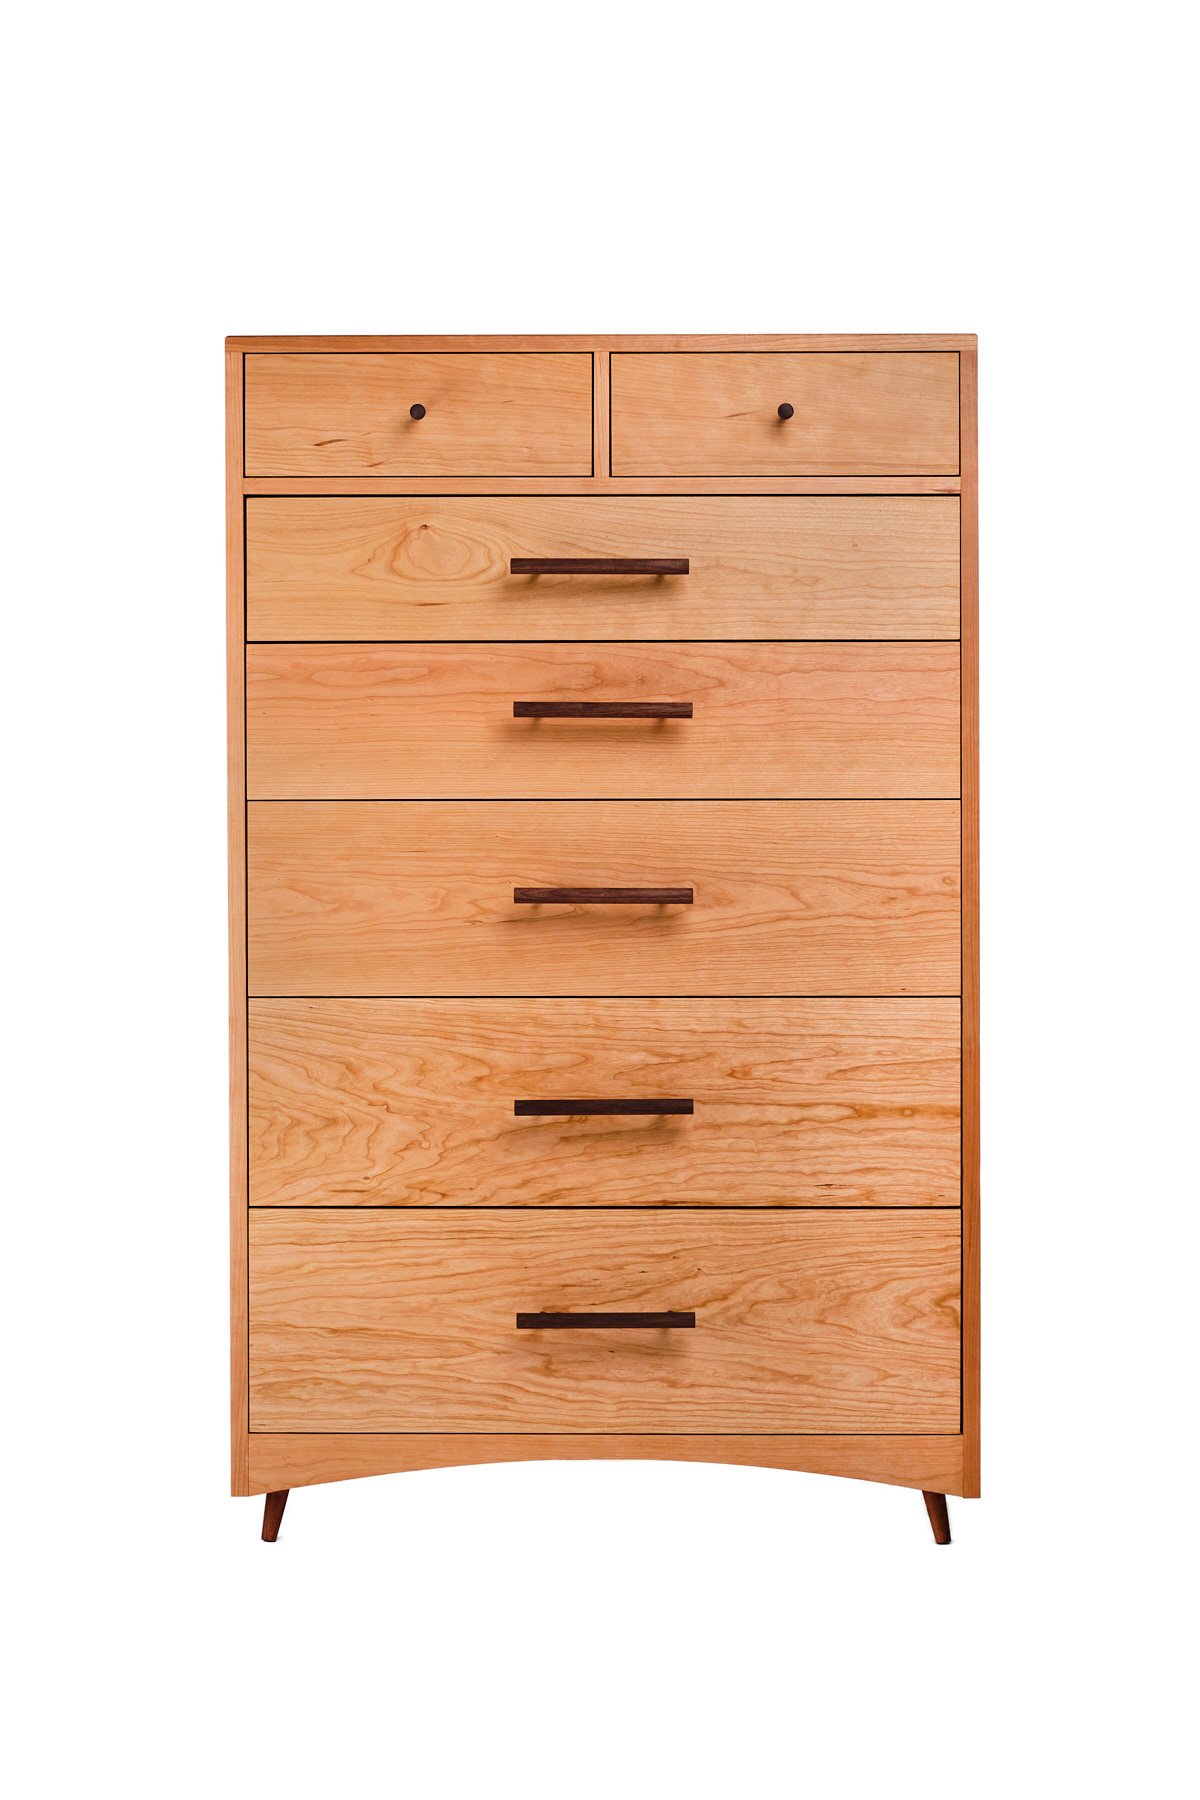 Godet-Woodworking-Dresser-2021-07-09-3941Web-Res.jpg